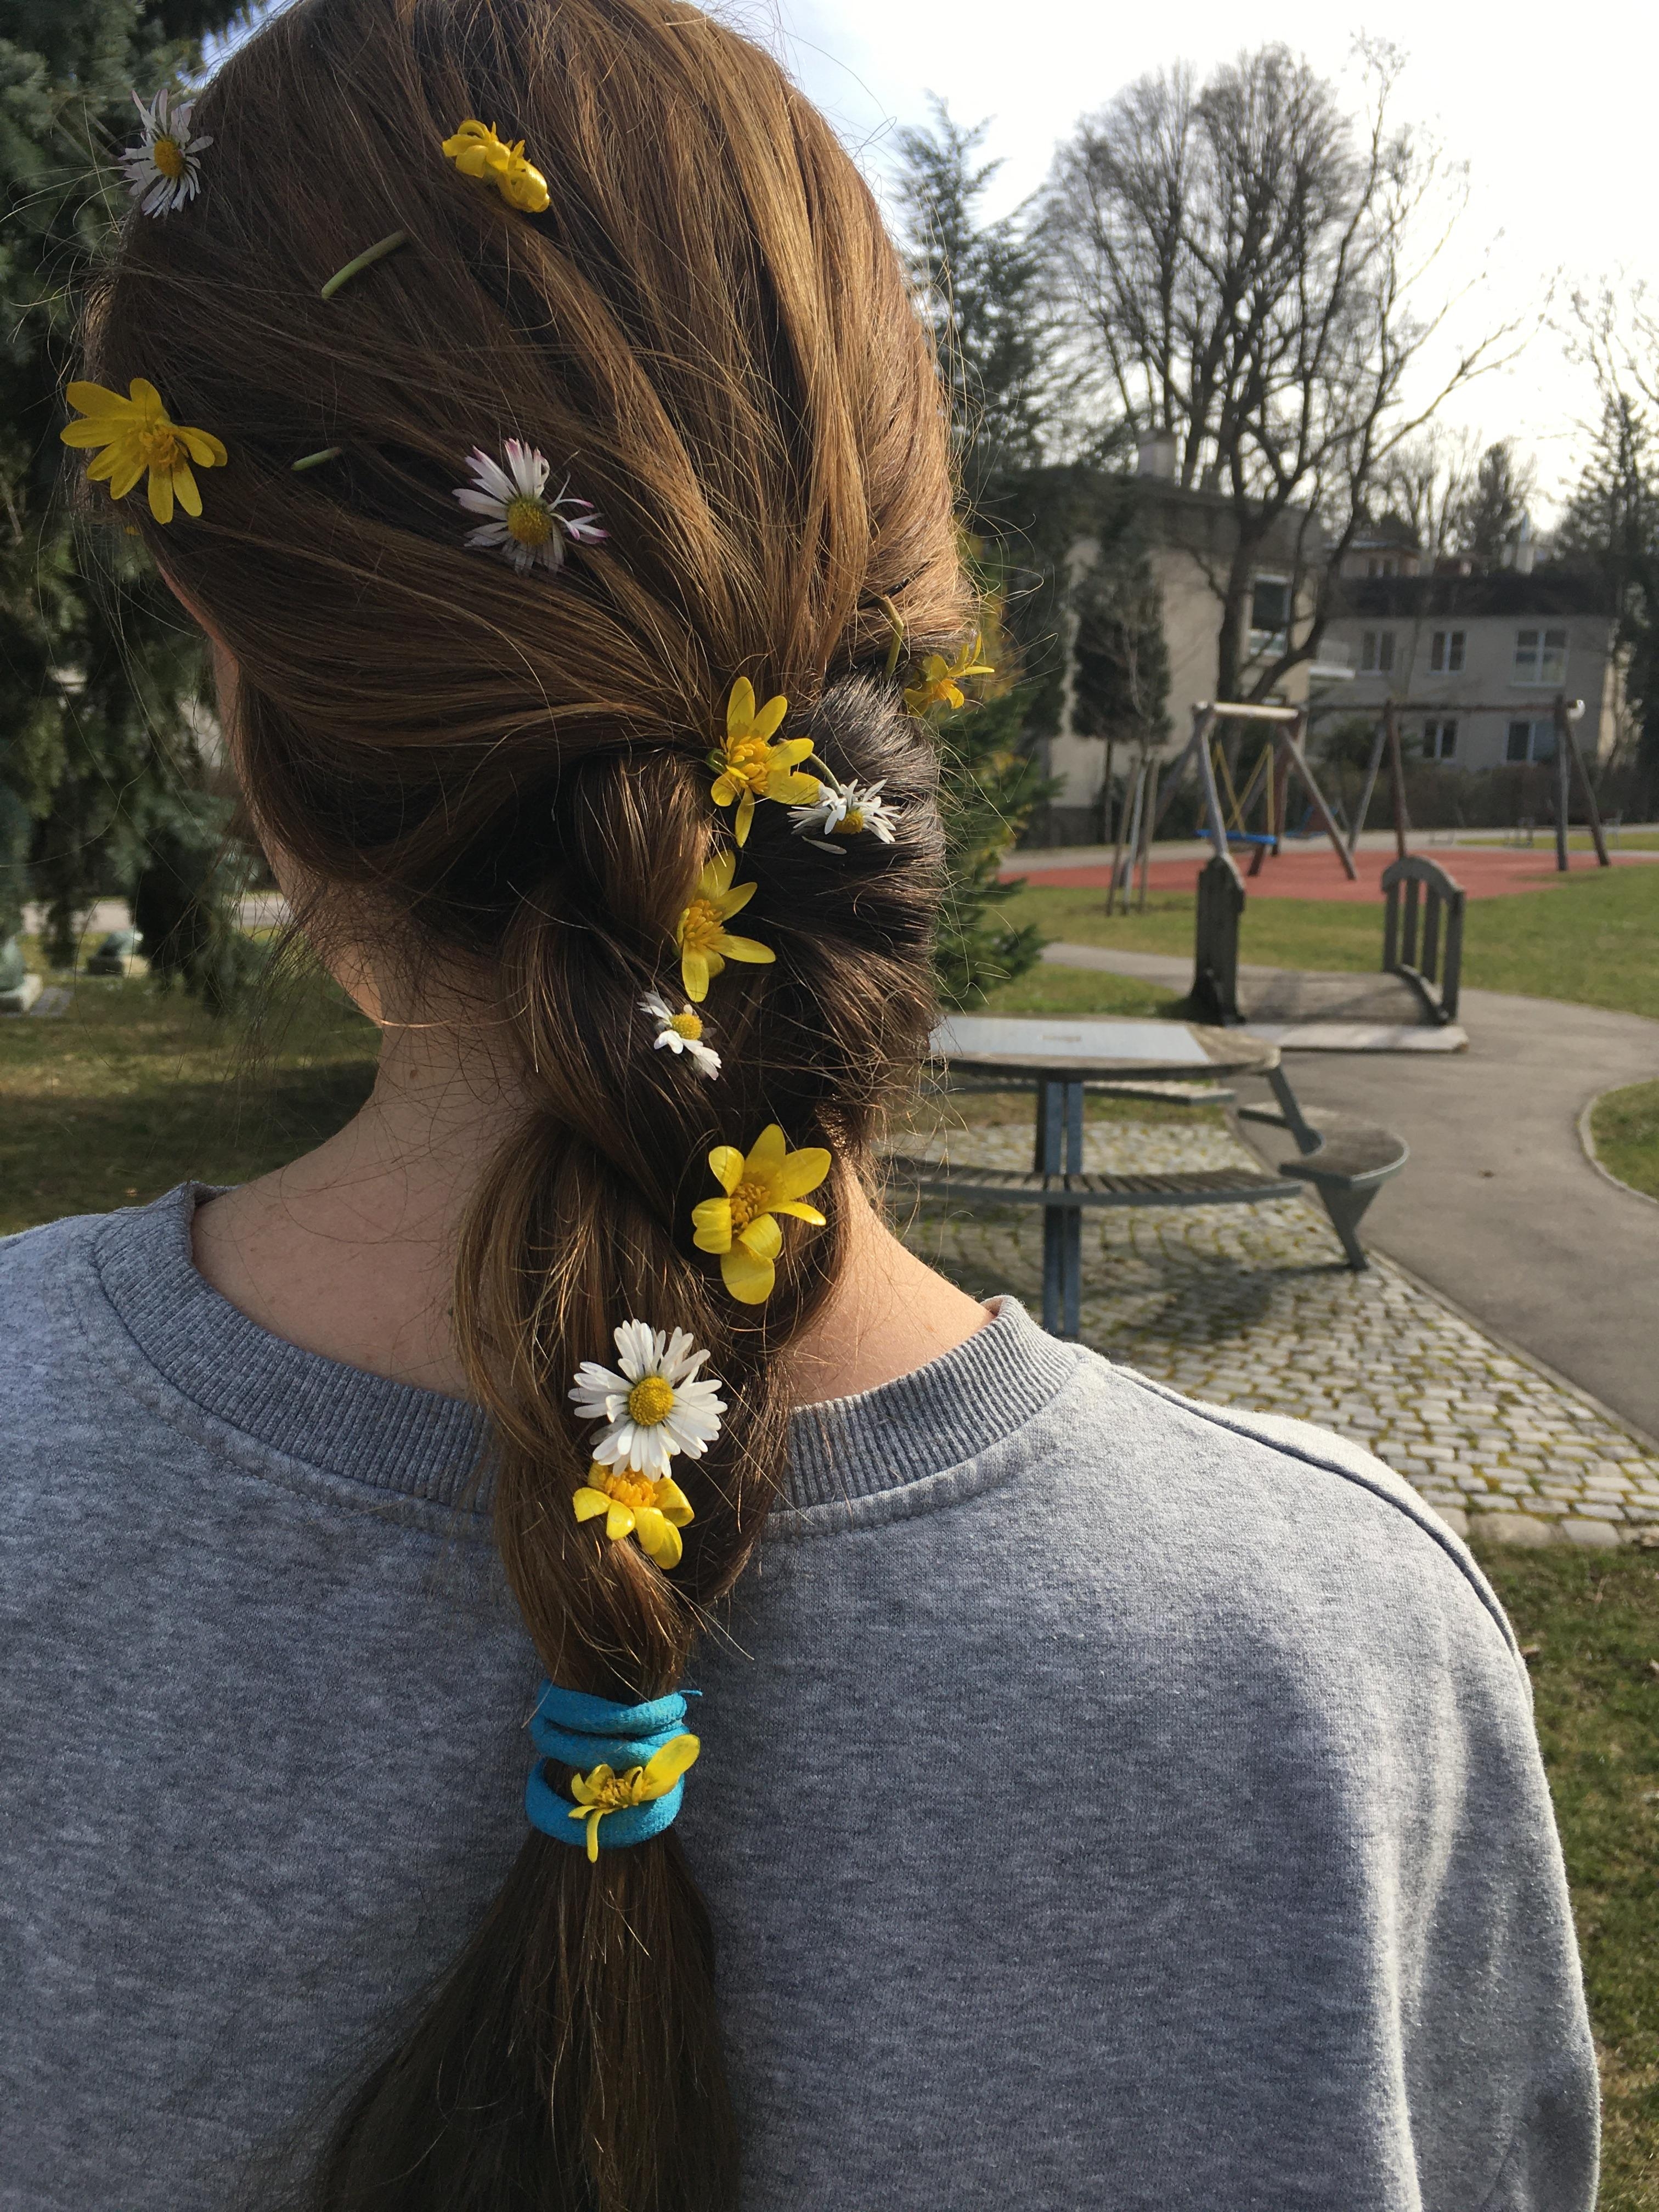 Lieblingsbeschäftigung meiner Schüler #hair#bronde#teacher#flowers#hippie#hairstyle#spring